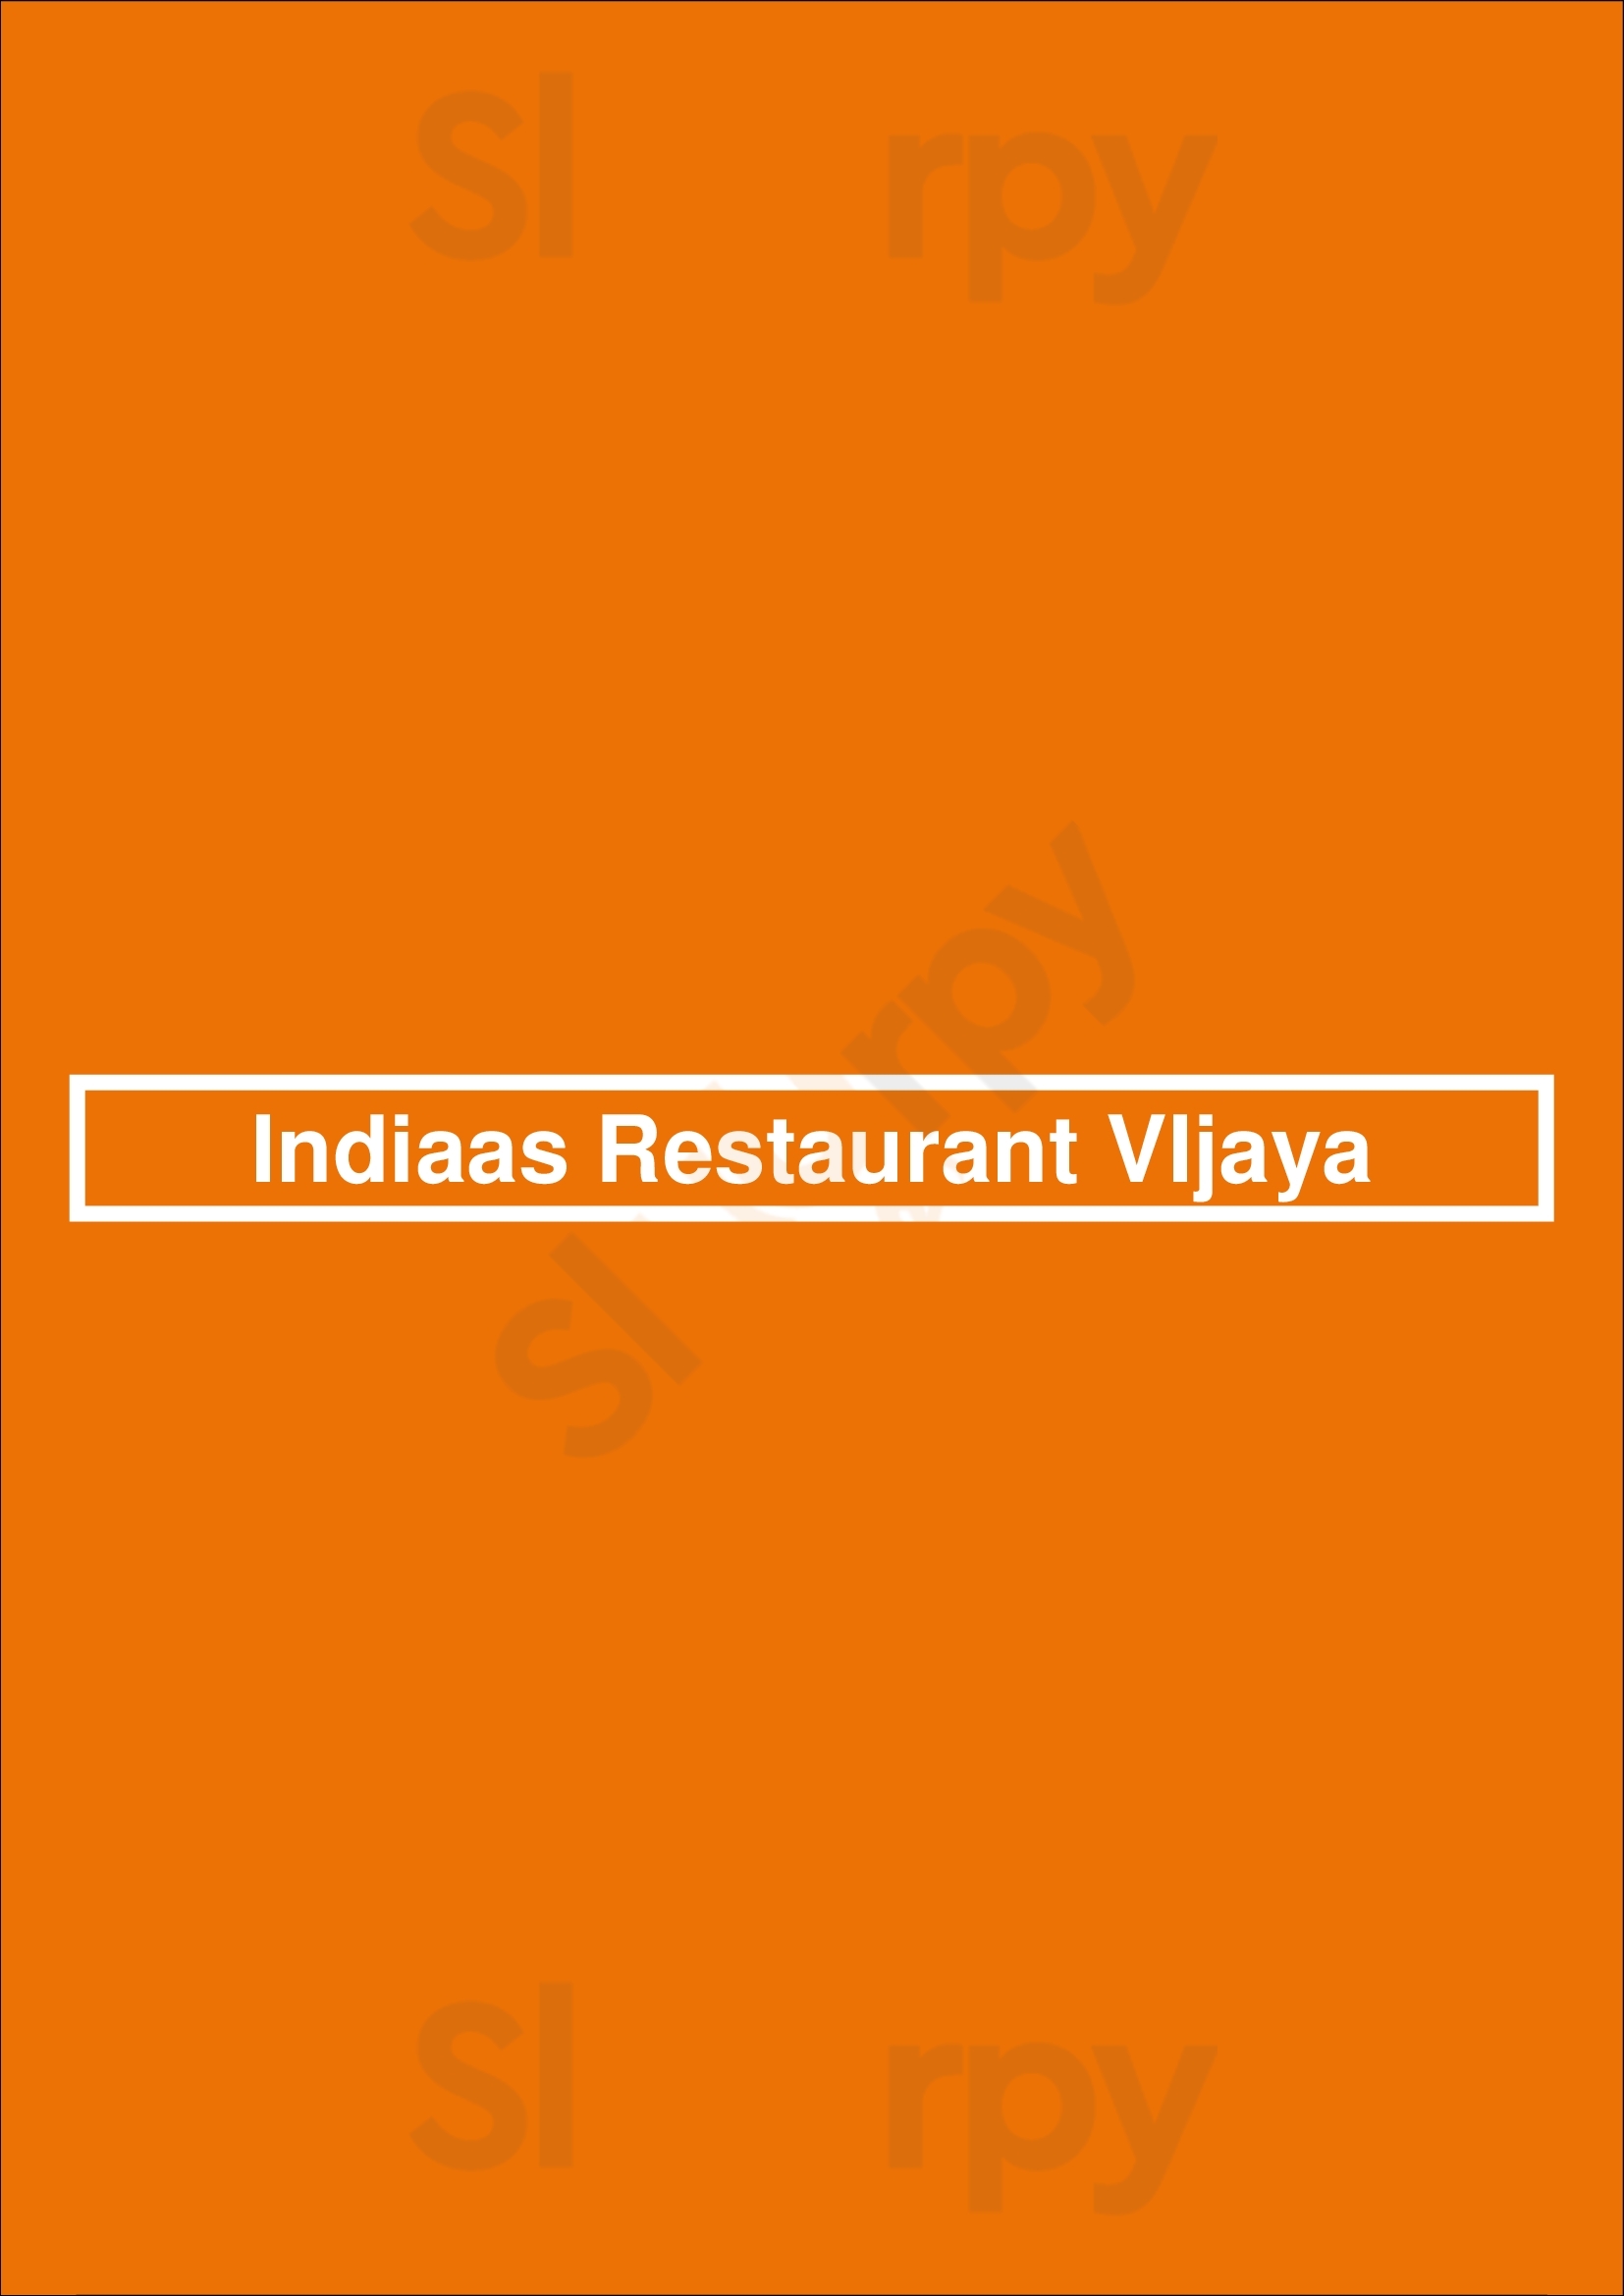 Indiaas Restaurant Vijaya Amsterdam Menu - 1